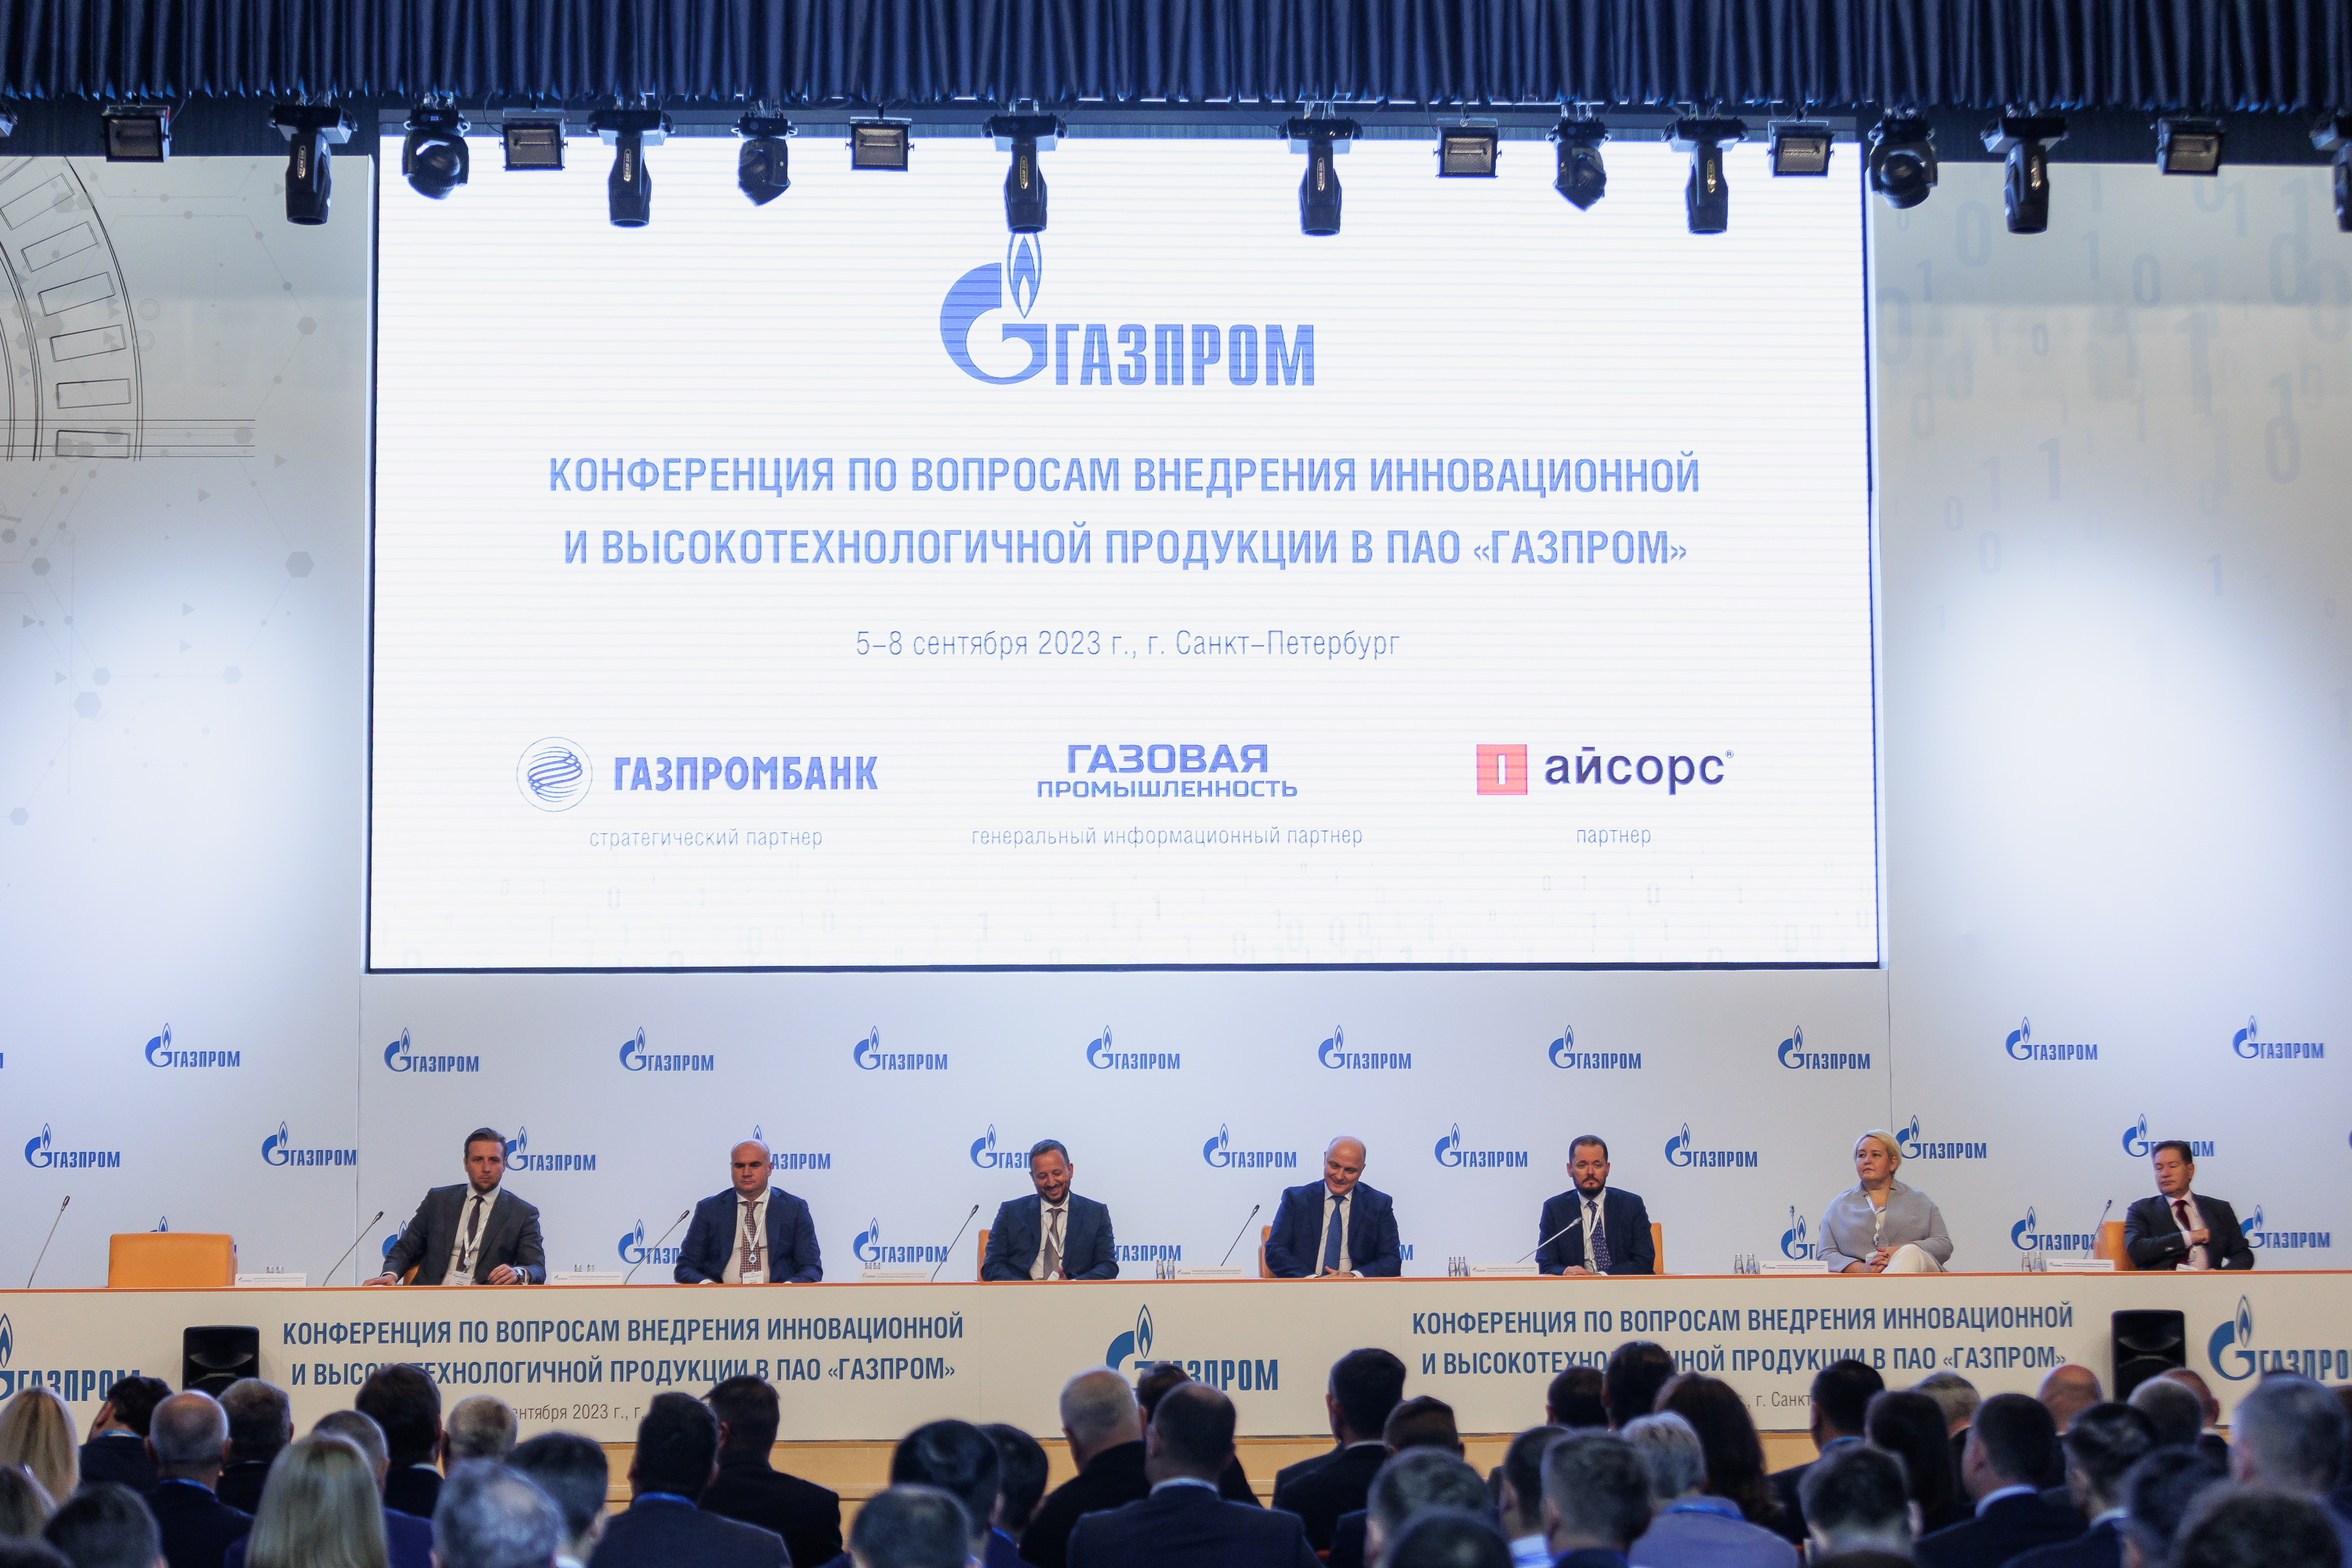 Инновации для мировых лидеров. Isource на конференции по внедрению технологий в ПАО «Газпром»